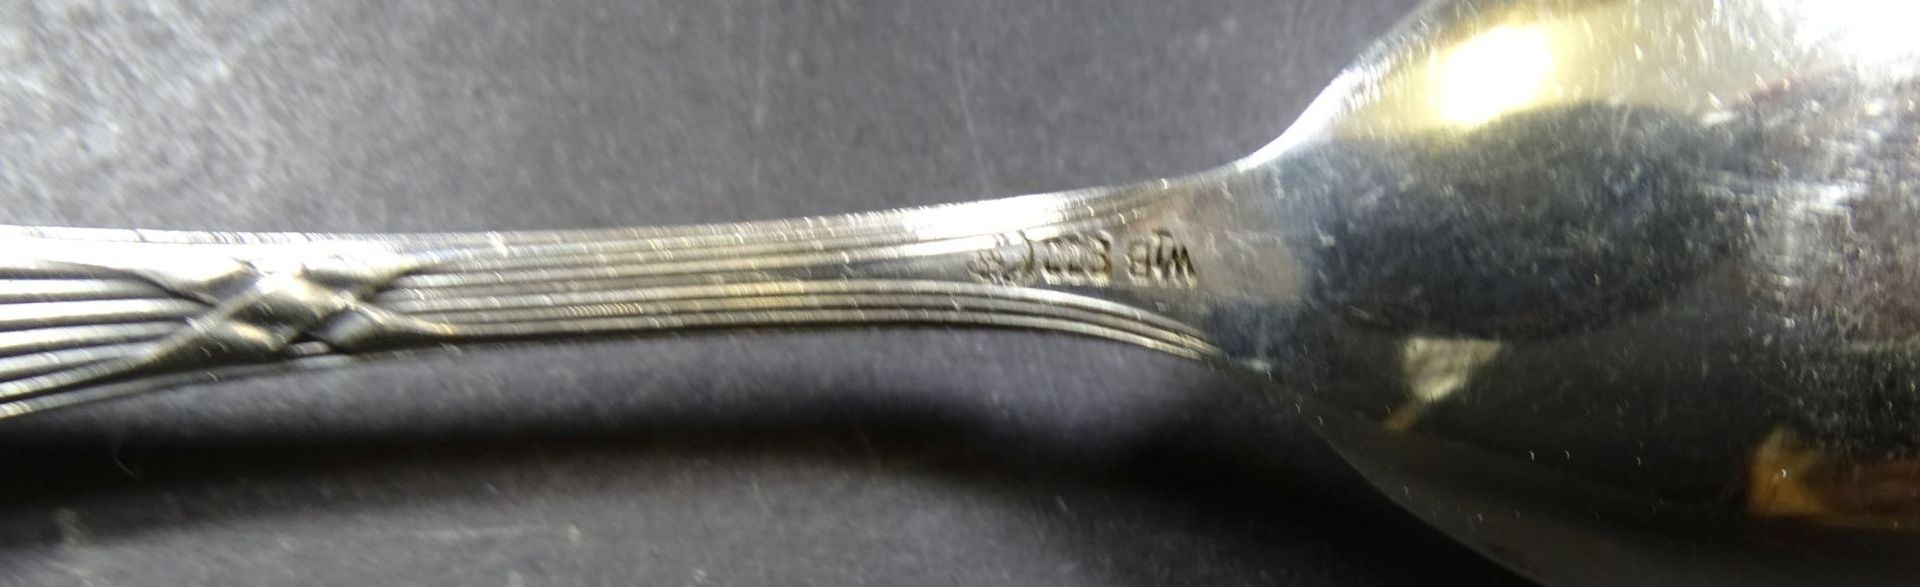 Jugendstil-Vorlegelöffel, Silber-800- "WTB", L-18,5 cm, 40 gr - Bild 4 aus 4